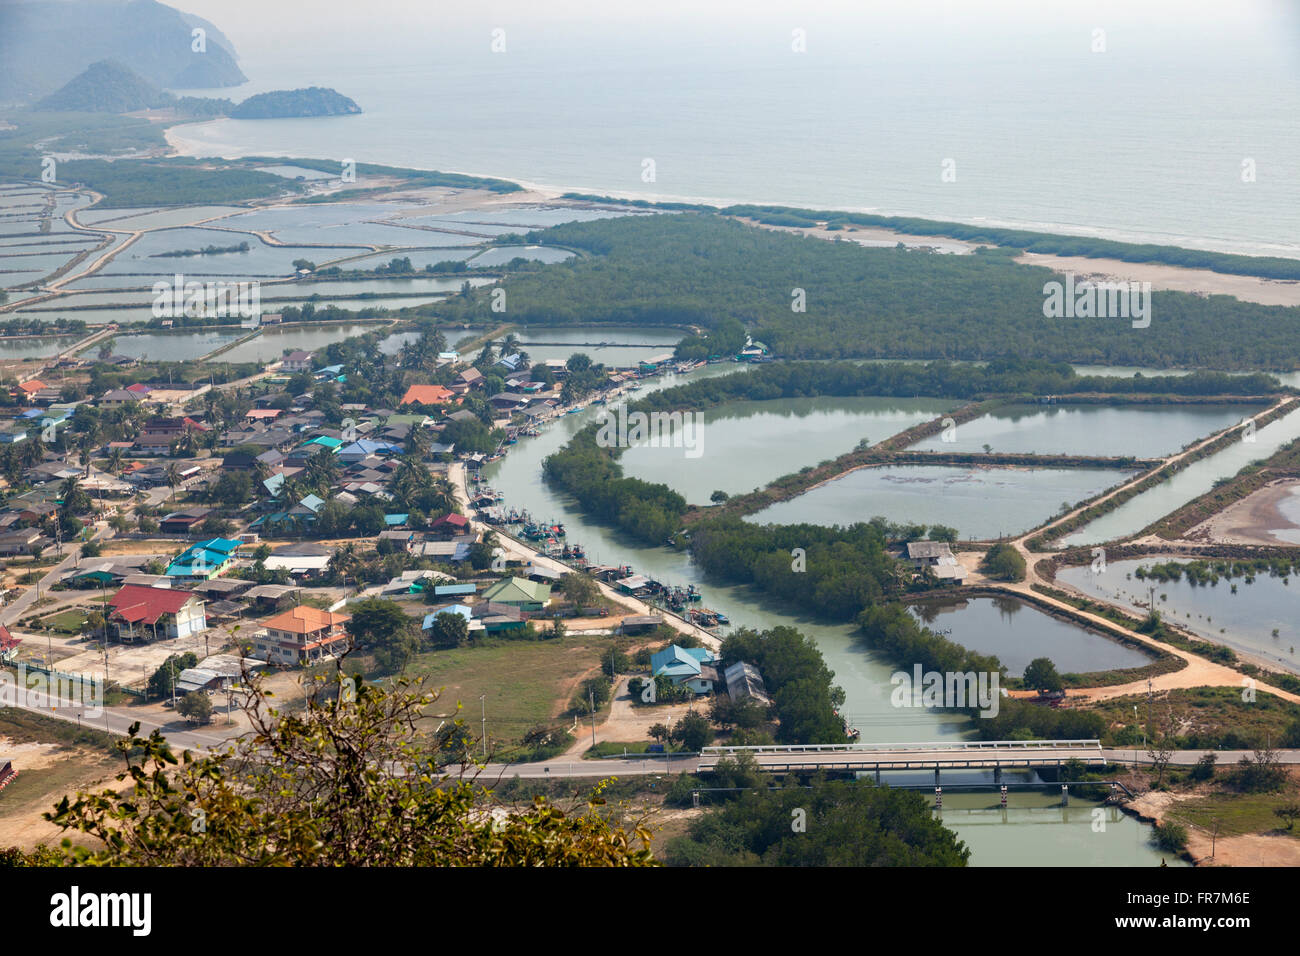 Du point de vue de Khao Daeng, vue sur une partie de la Khao Sam Roi Yot marine national park, les étangs de crevettes et le littoral. Banque D'Images